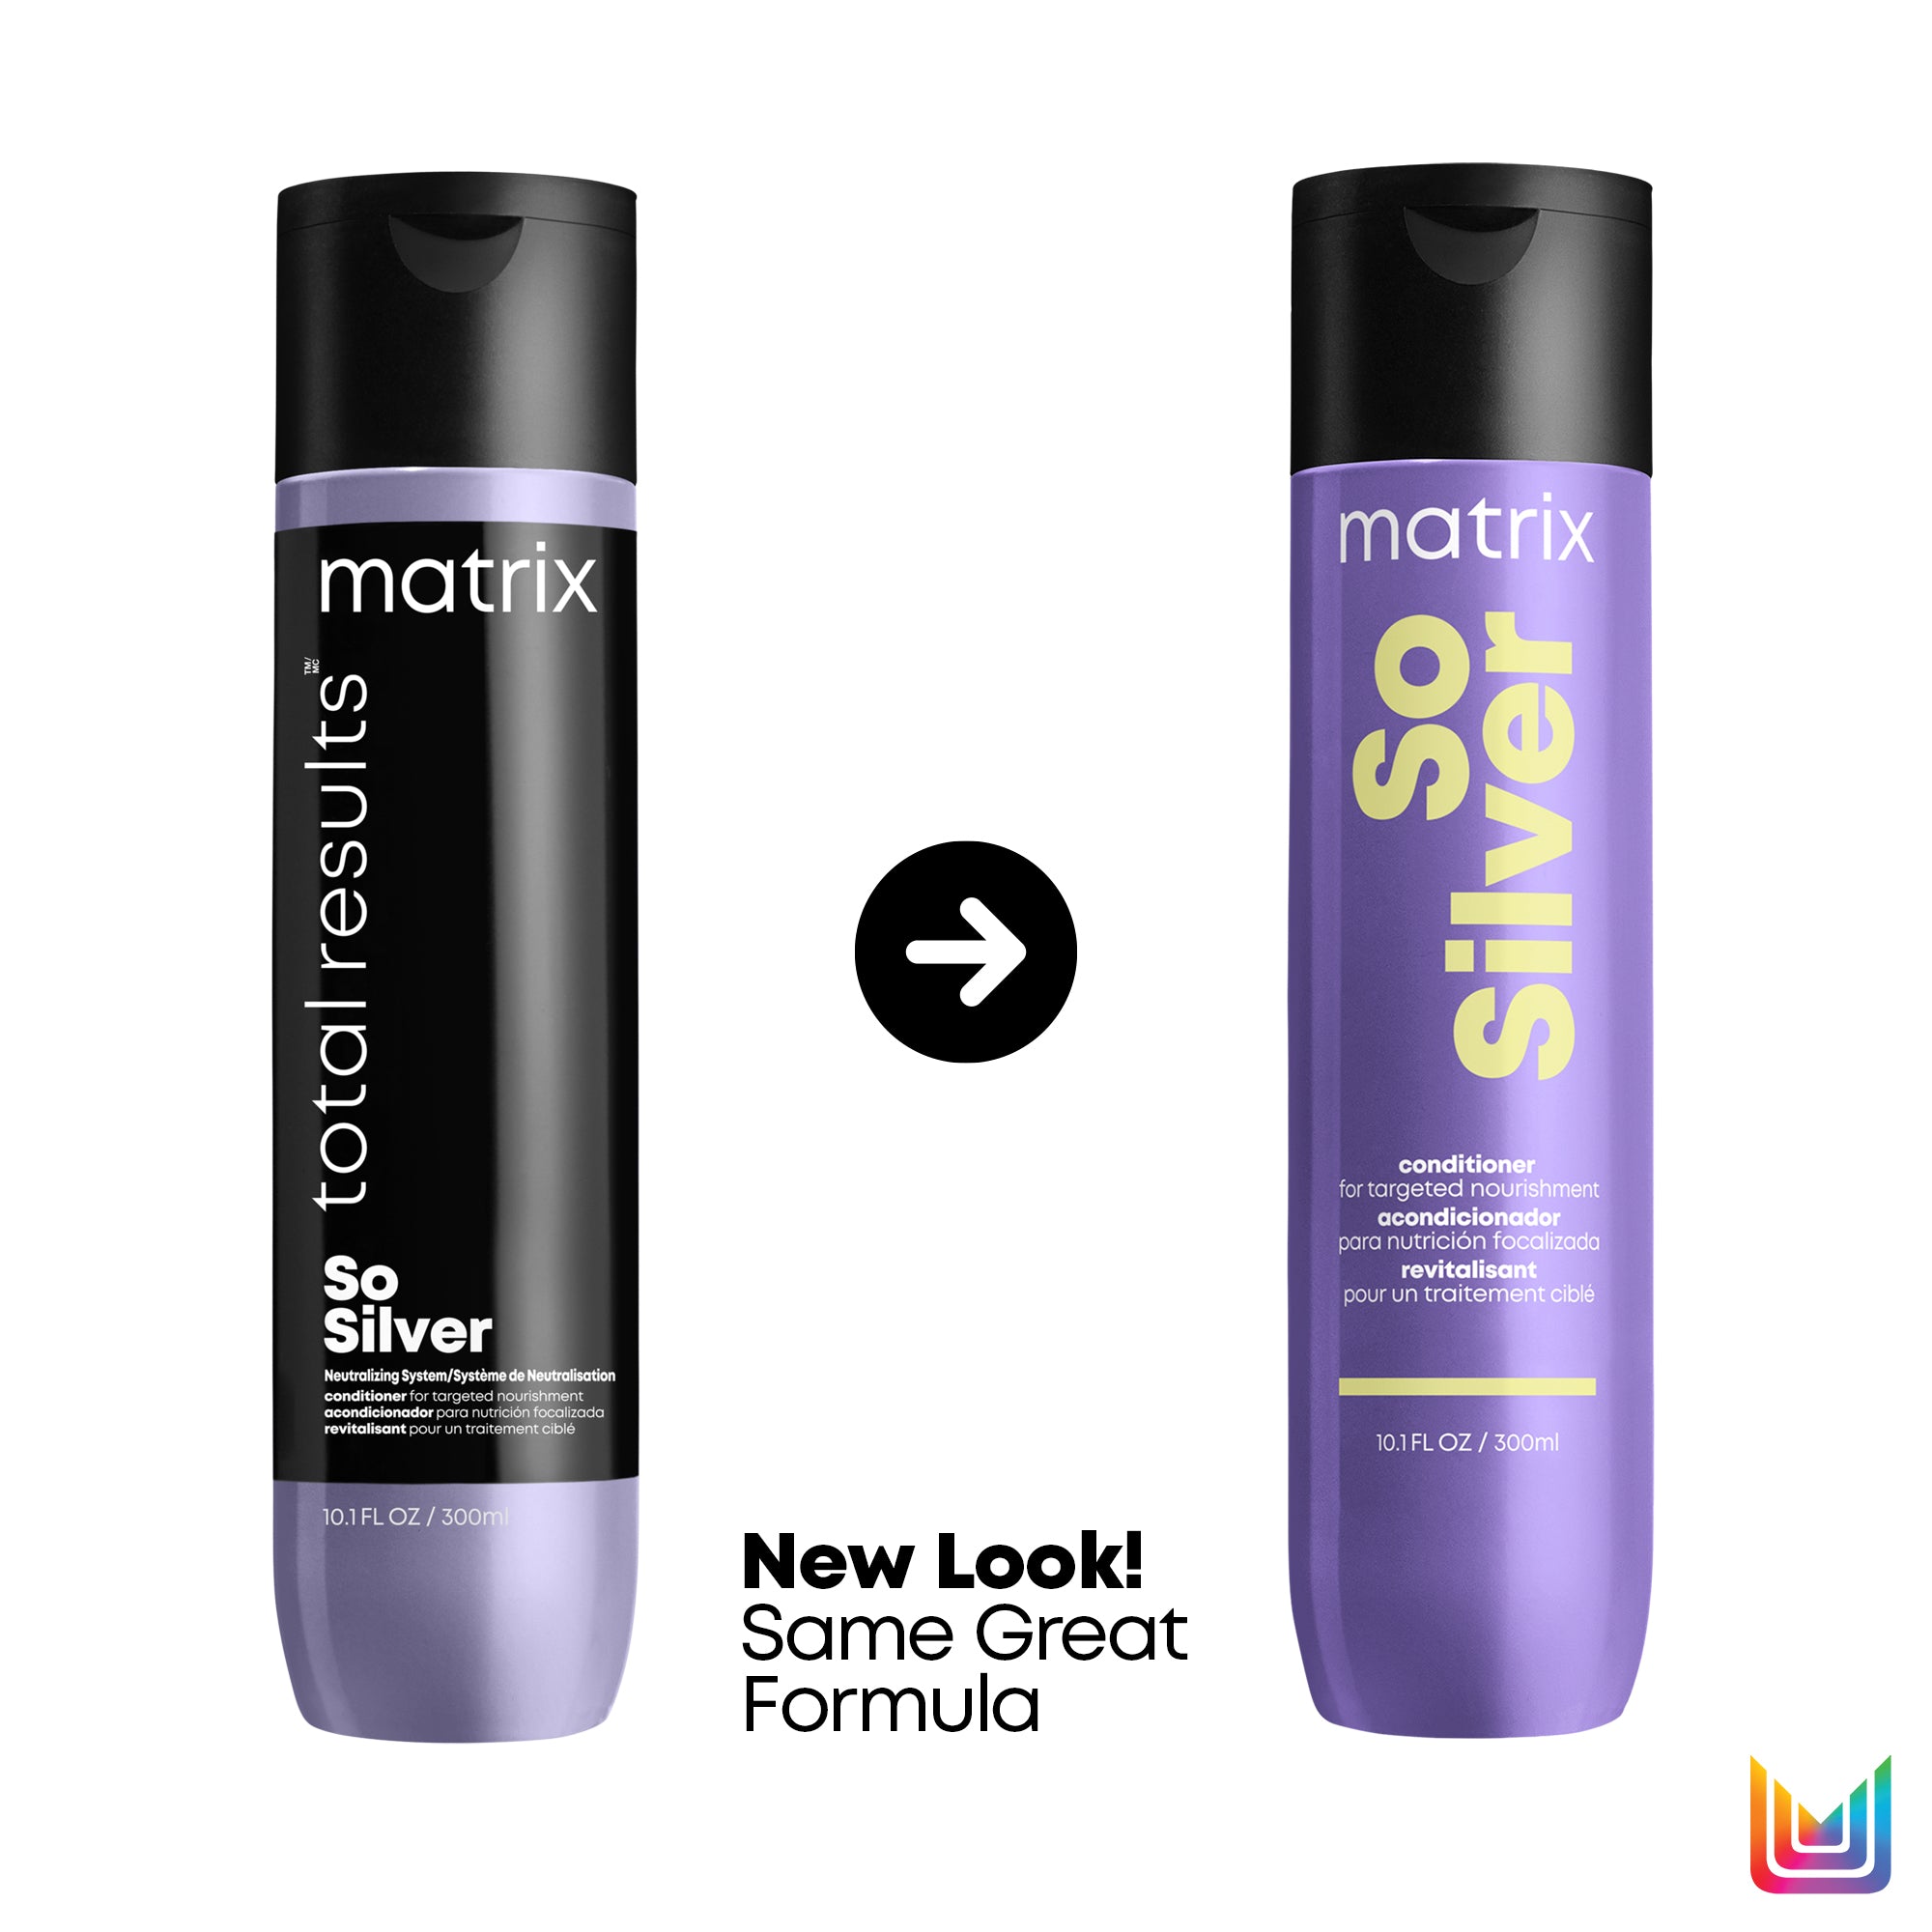 Matrix So Silver Shampoo and Conditioner Duo 10oz ($40 Value) / 10OZ